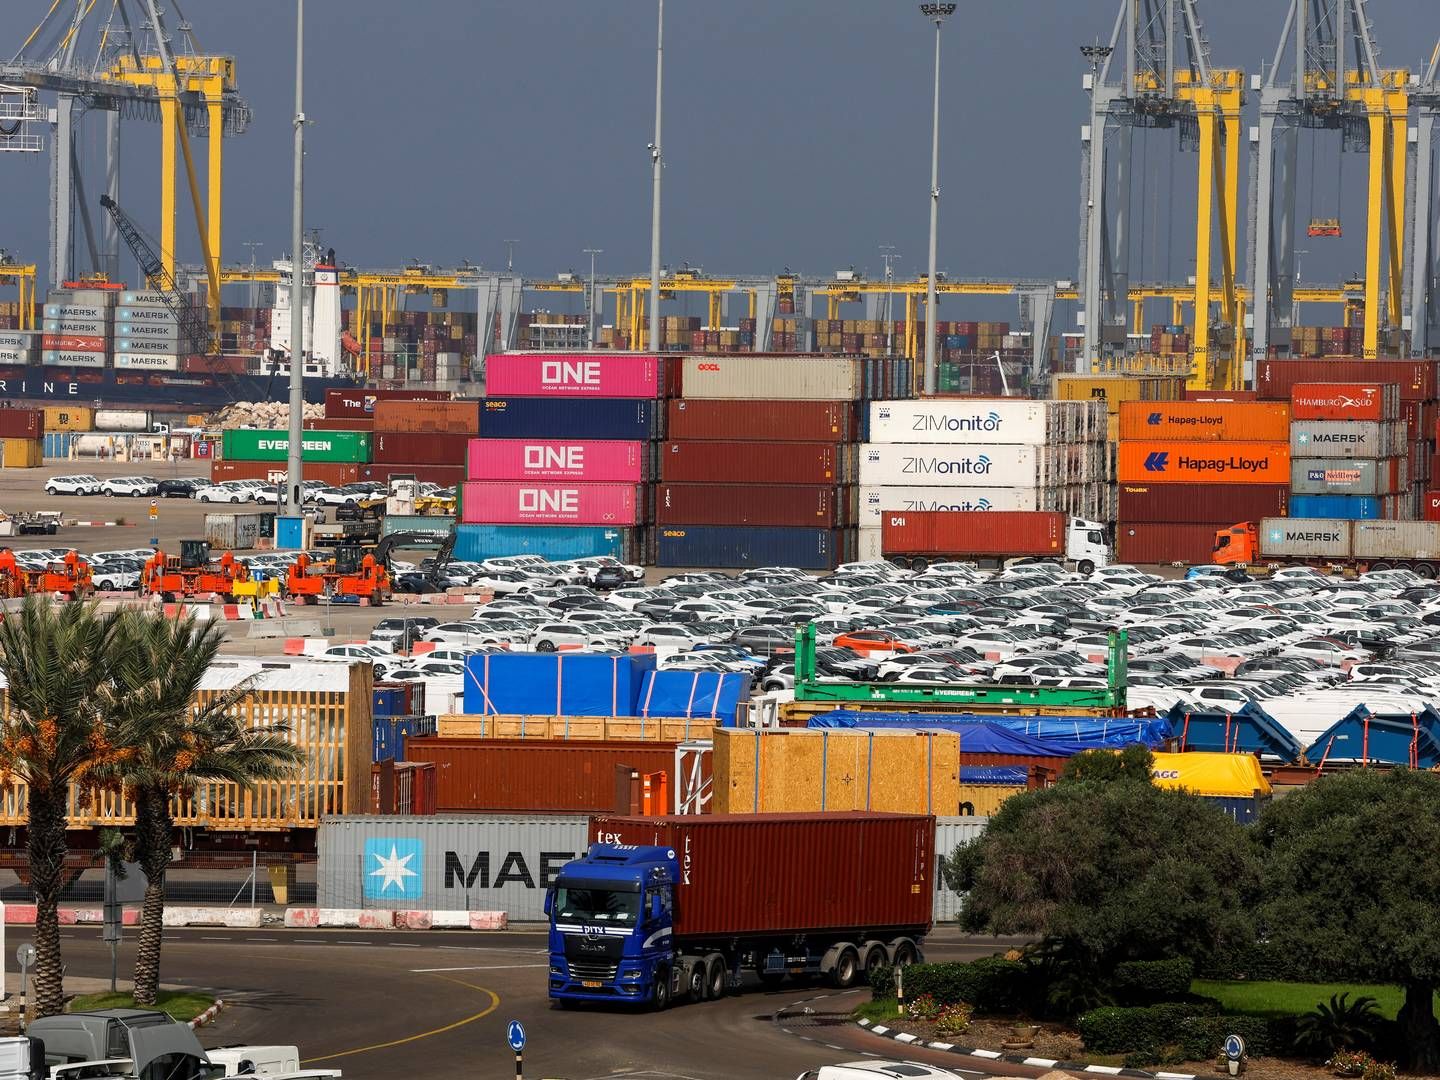 Ashdod-havnen i Israel, har begrænset fragten af farligt gods, men ellers opererer havnen trods krigen. | Foto: Ammar Awad/Reuters/Ritzau Scanpix